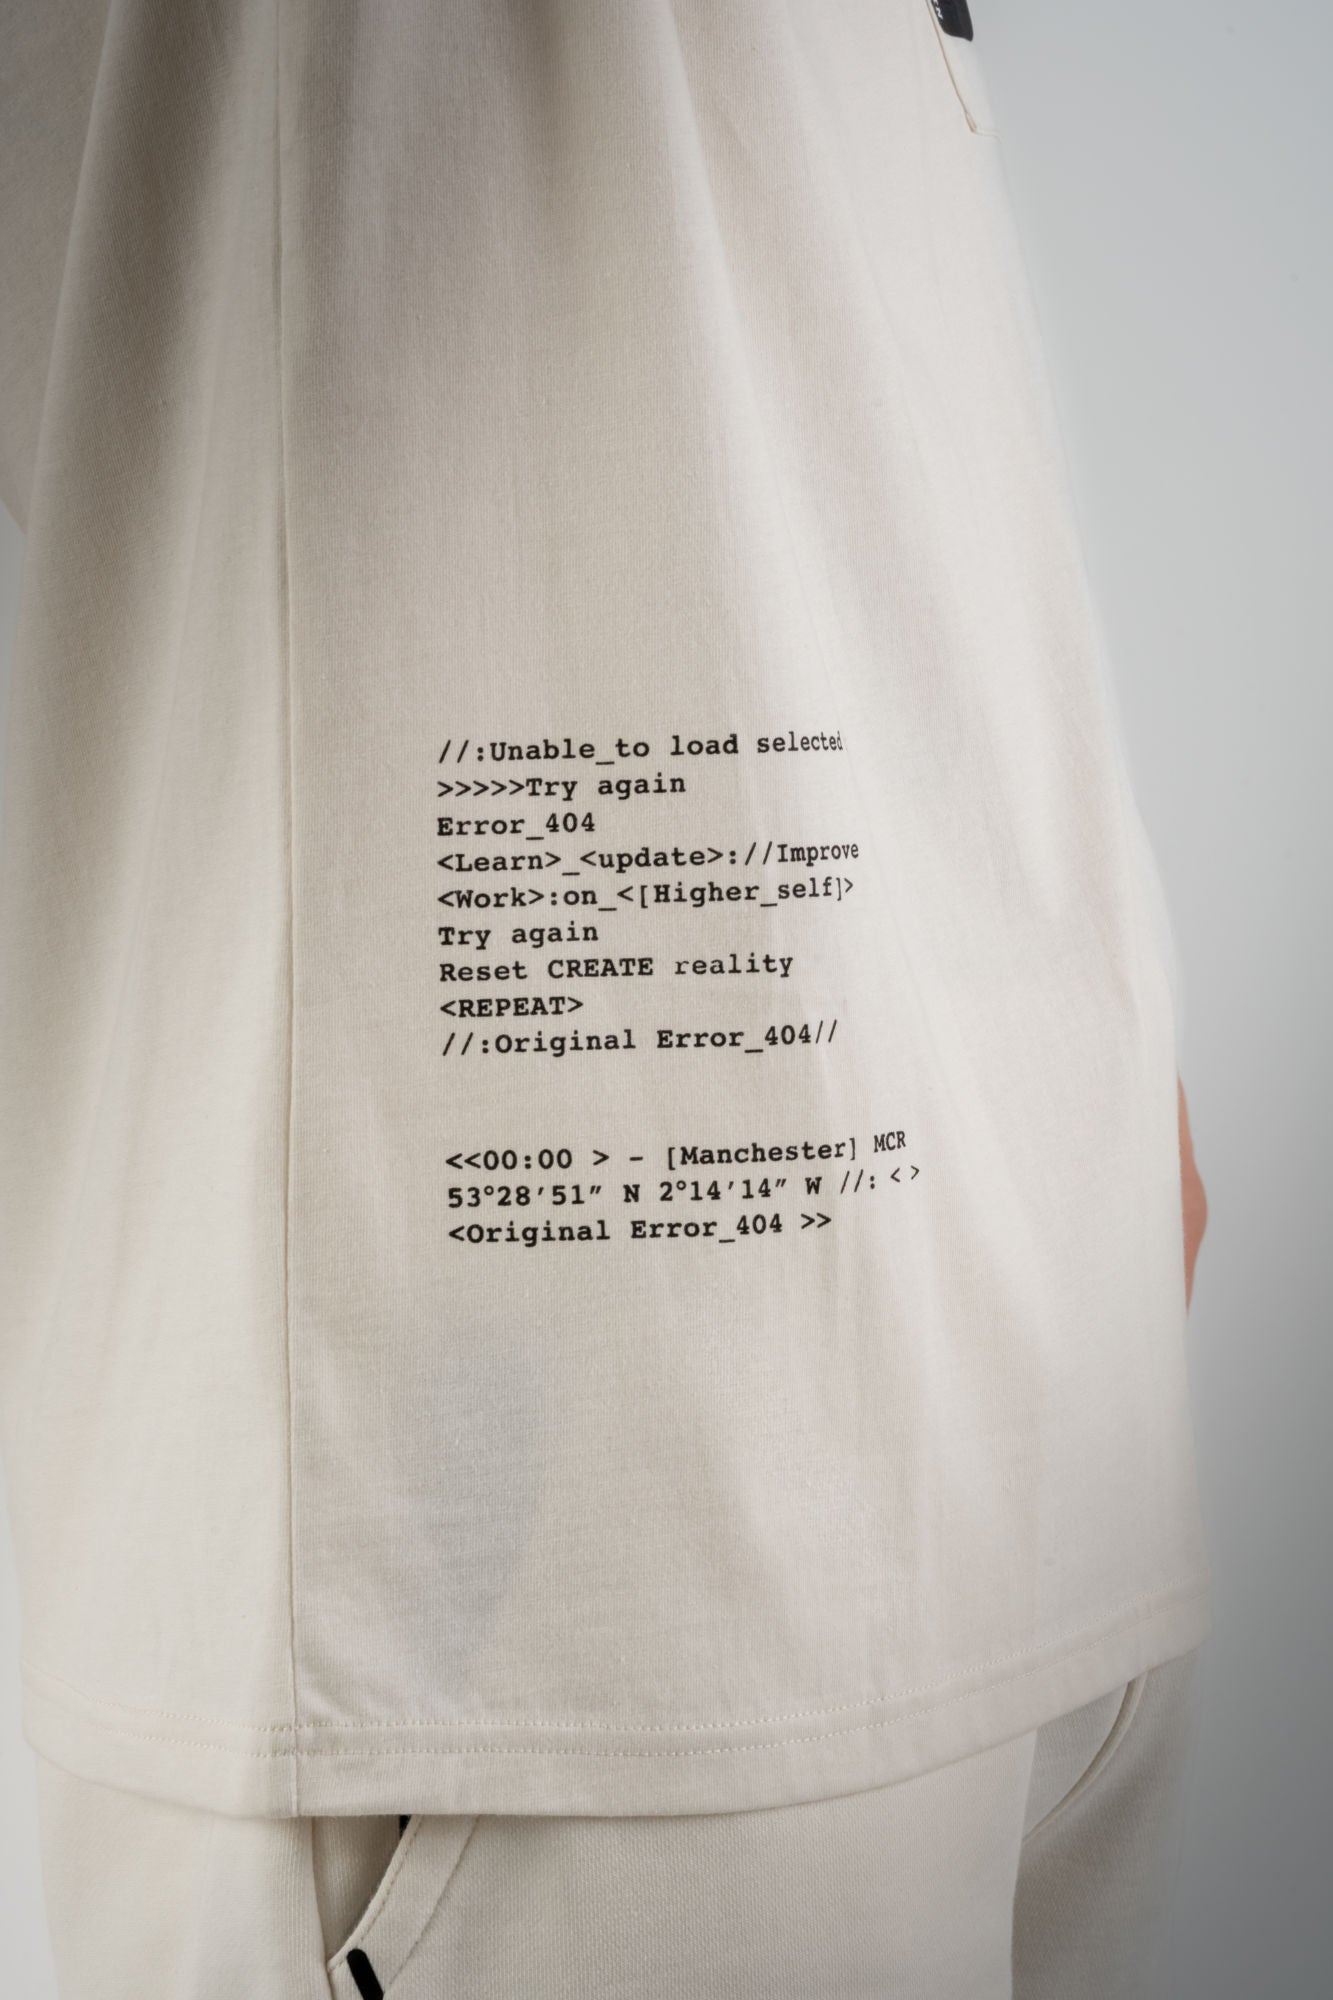 HTML Zip T-Shirt - Off White